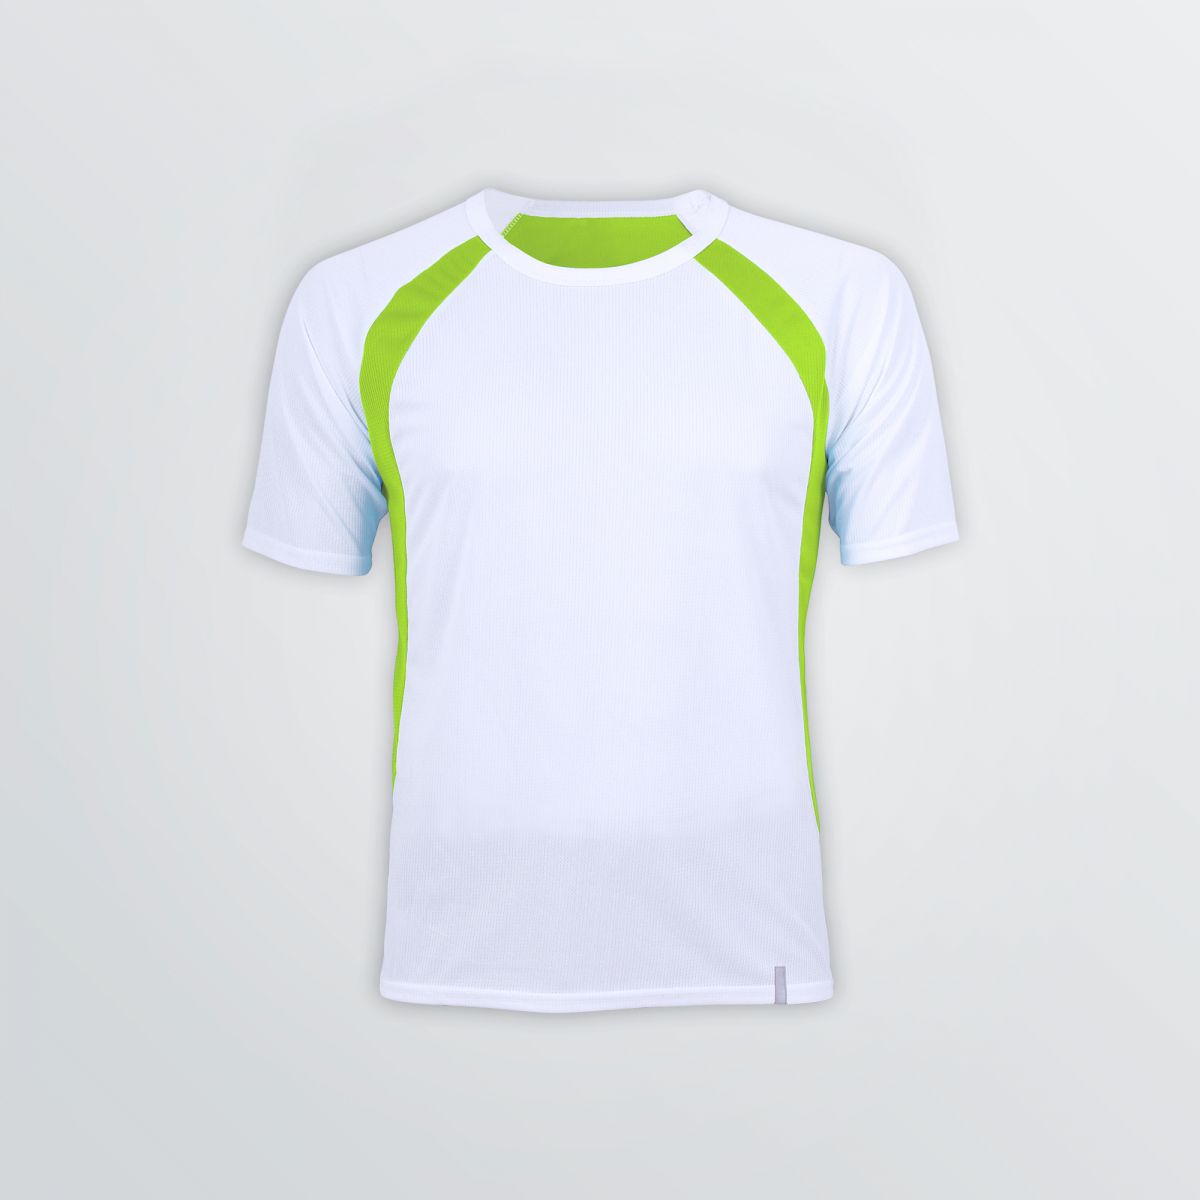 Atmungsaktives Pace Tech Shirt zum Individualisieren als Produktbeispiel in weiß mit grünen Farbakzenten - Frontansicht